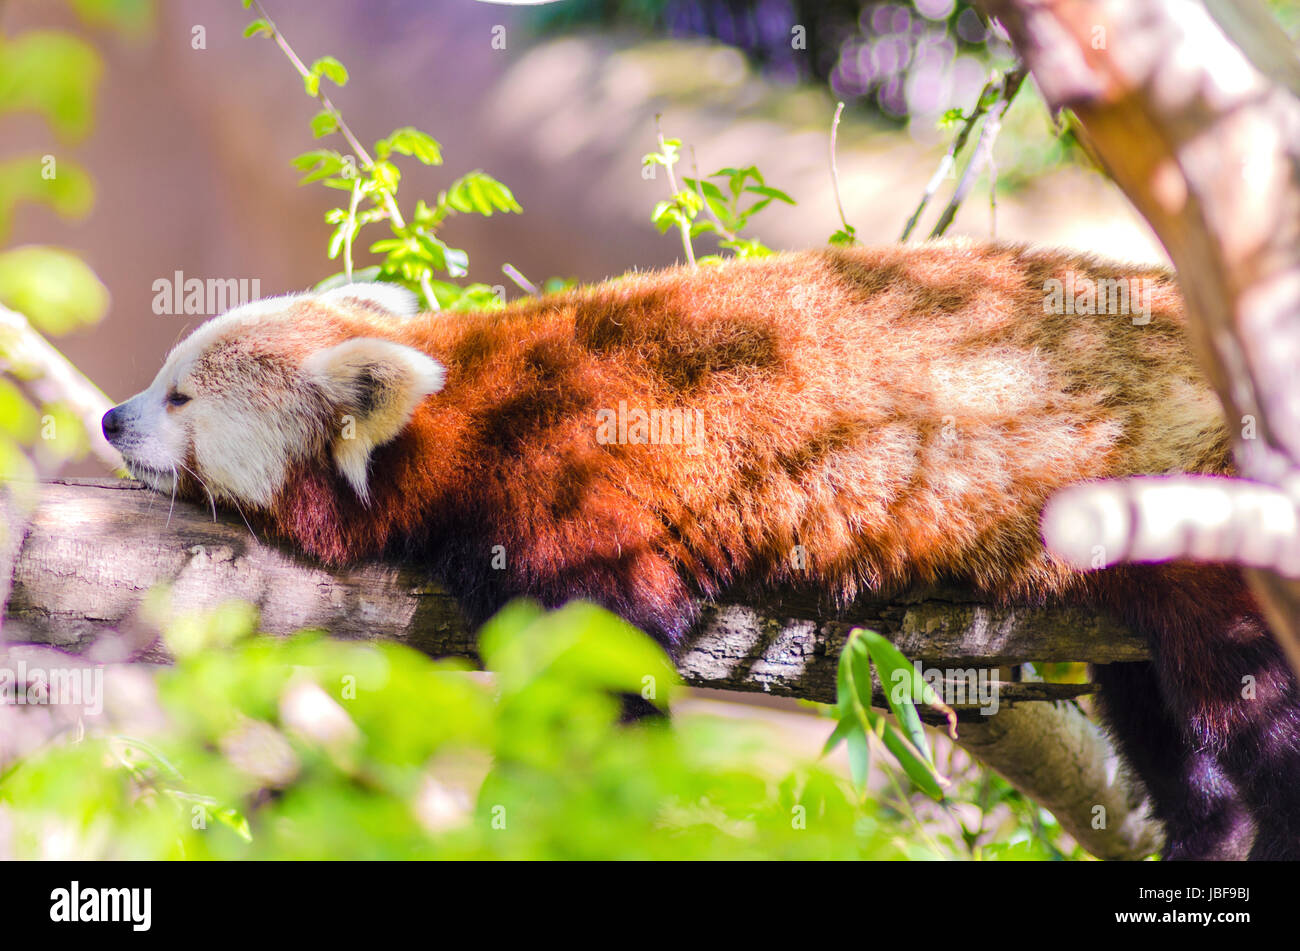 Ein schöner roter Panda liegend auf einem Ast schlafen Strethced mit seinen Beinen hängend nach unten baumeln. Der rote Katze Bär hat eine weiße Maske und rot braunen Mantel und heißt Hun ho in der chinesischen Bedeutung Fuchs Feuer. Stockfoto